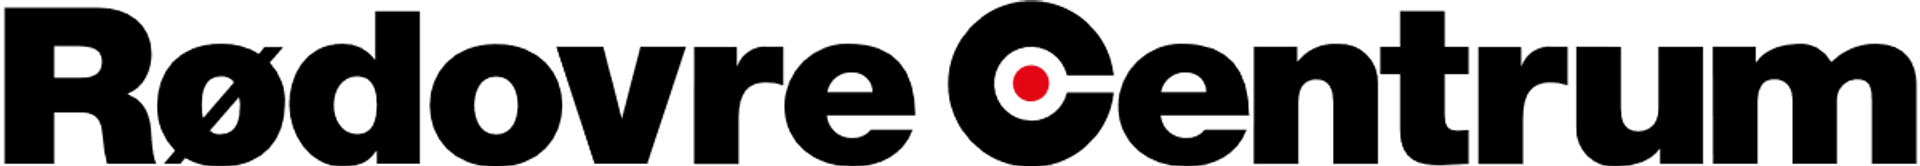 RØDOVRE CENTRUM logo of current catalogue